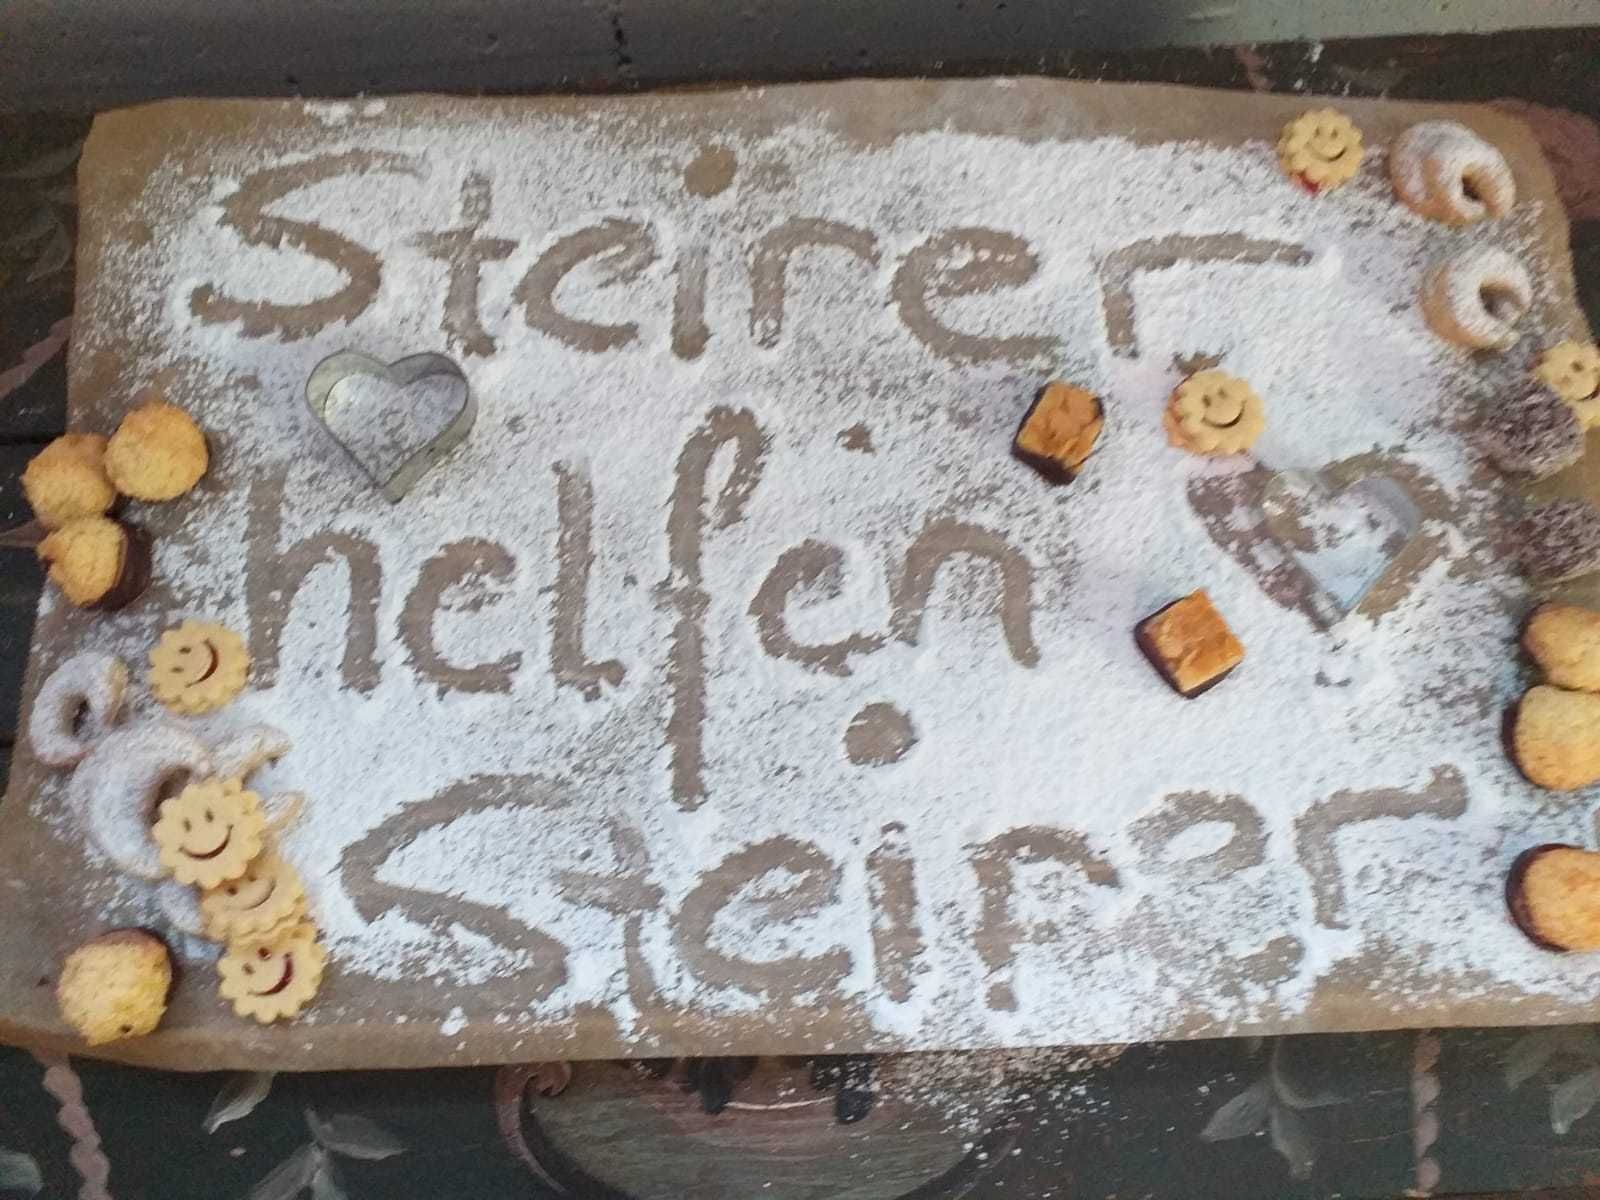 Die steirischen Bäuerinnen spendeten Zeit und Zutaten und verkauften 720 Kilo Kekse für einen guten Zweck © Bäuerinnenorganisation